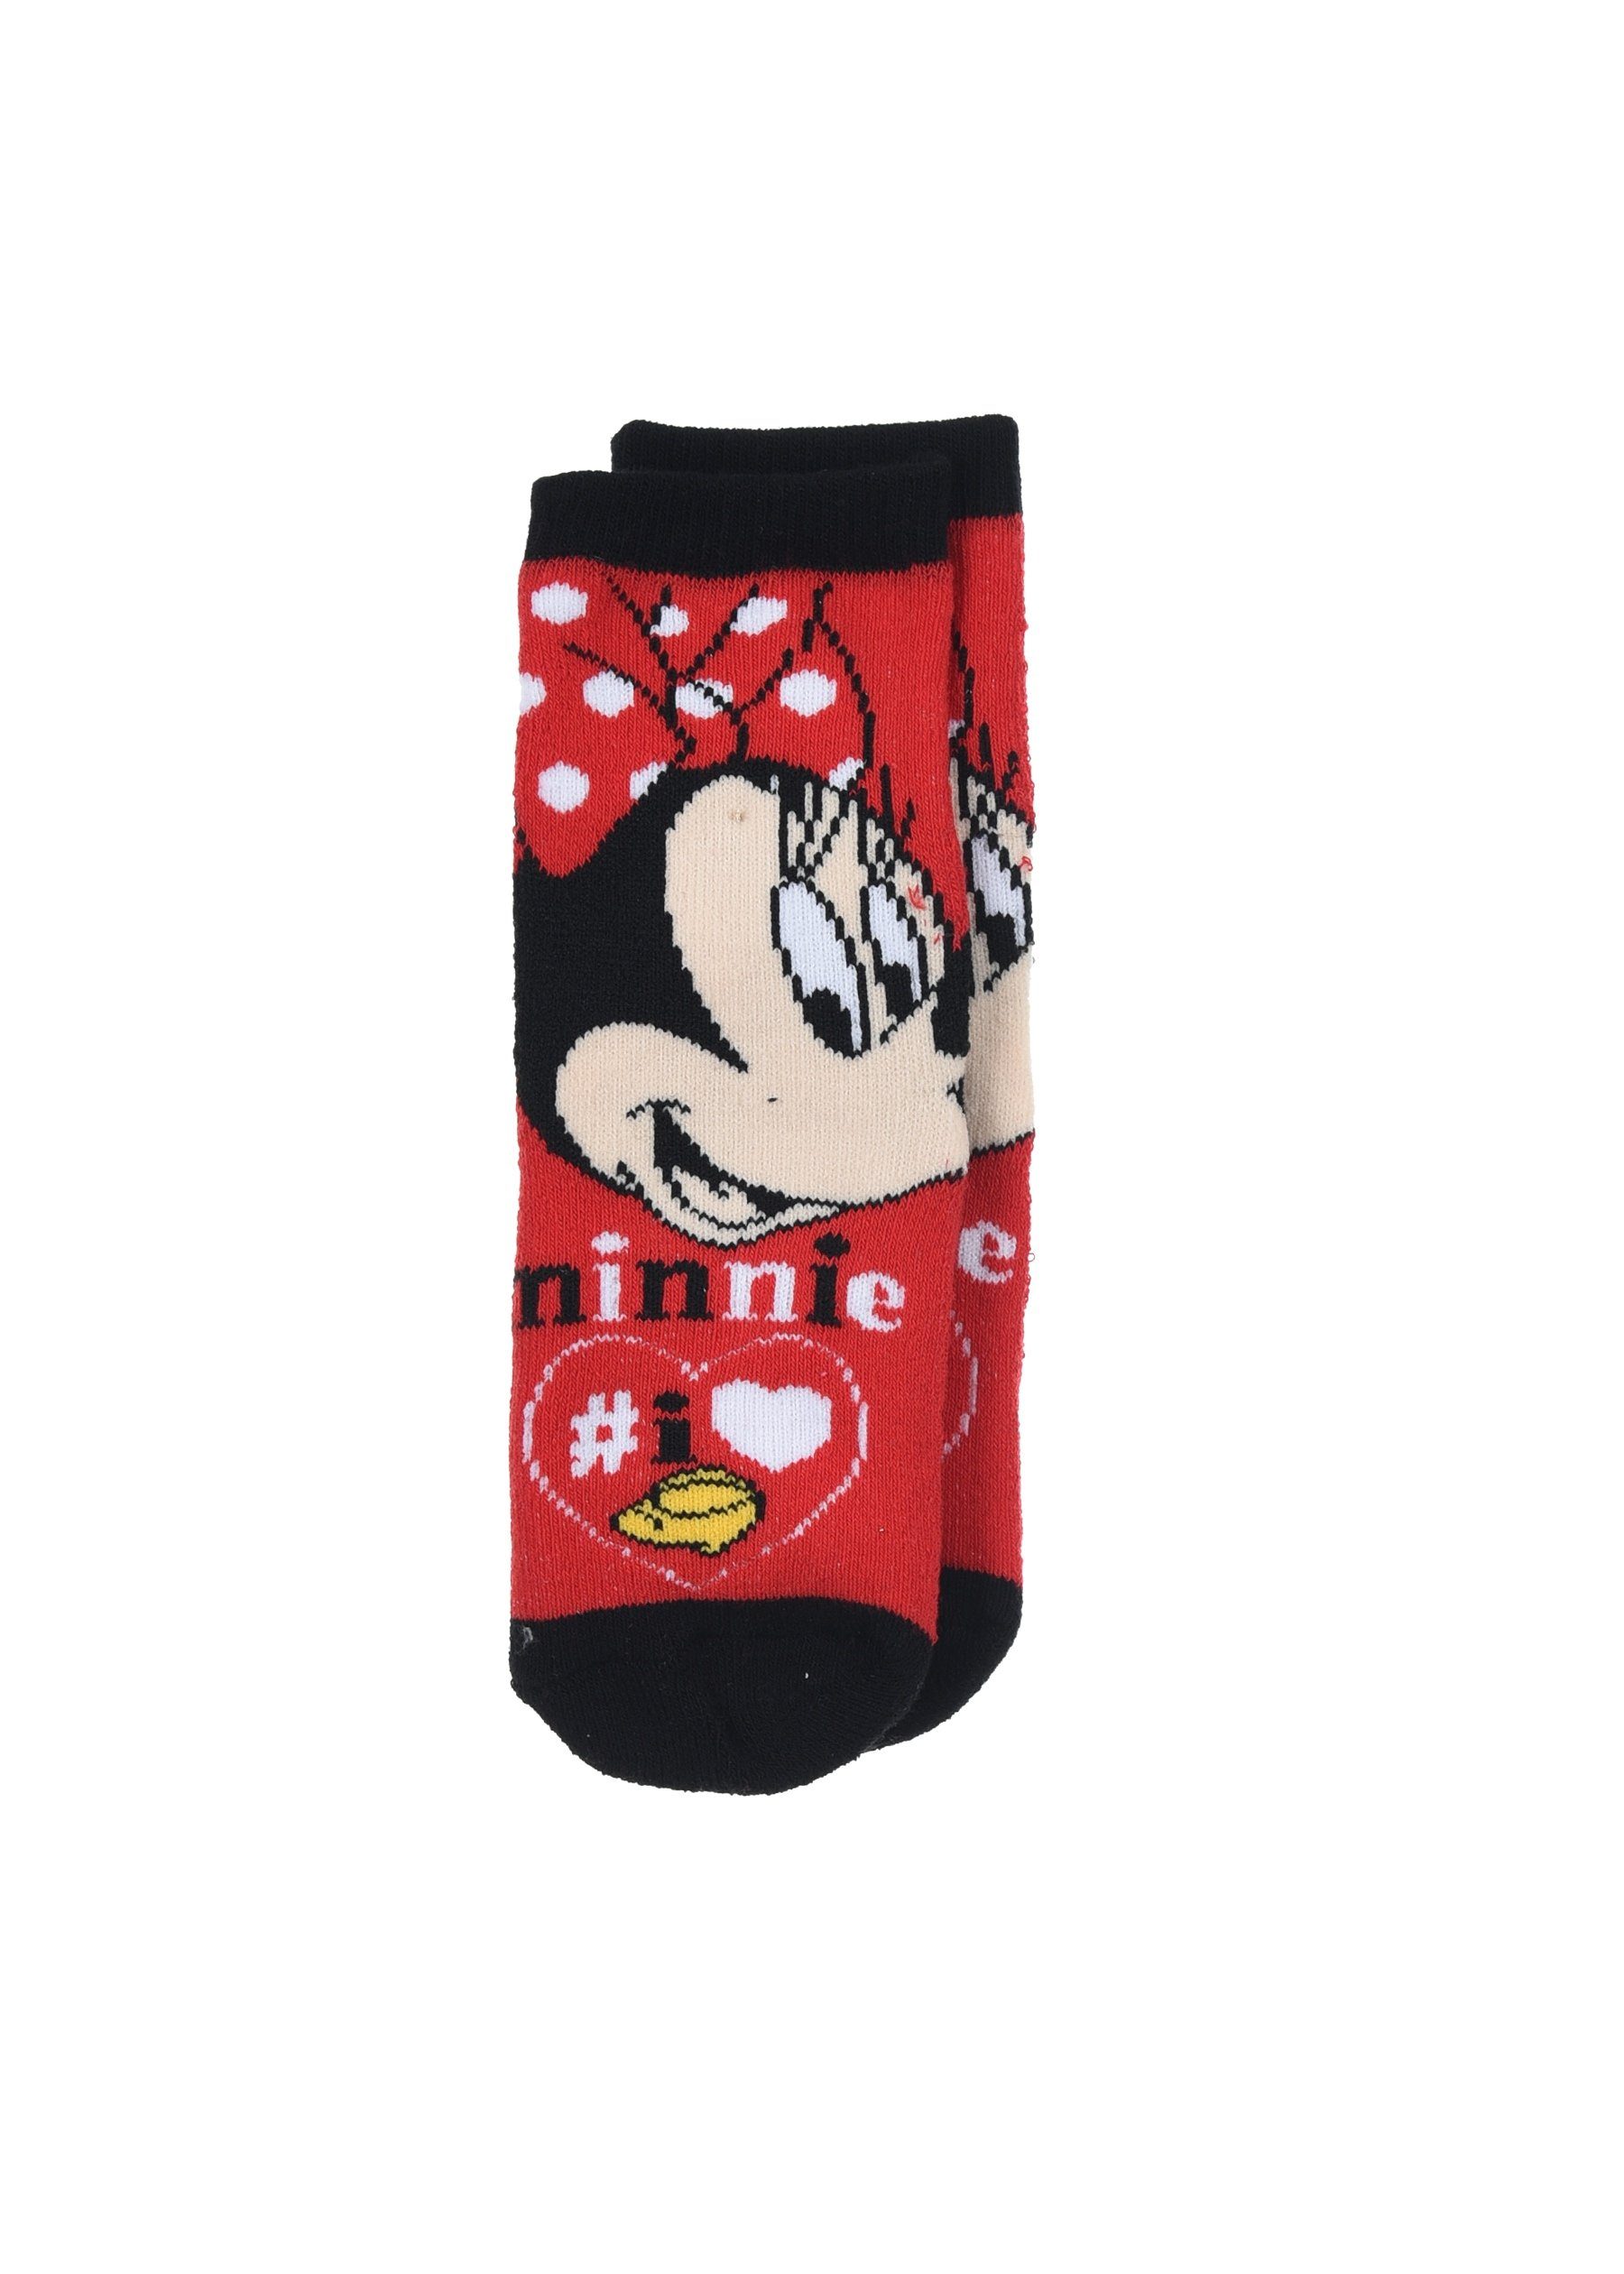 Disney Minnie Mouse Mädchen Strümpfe mit Gummi-Noppen (2-Paar) ABS-Socken Kinder Socken